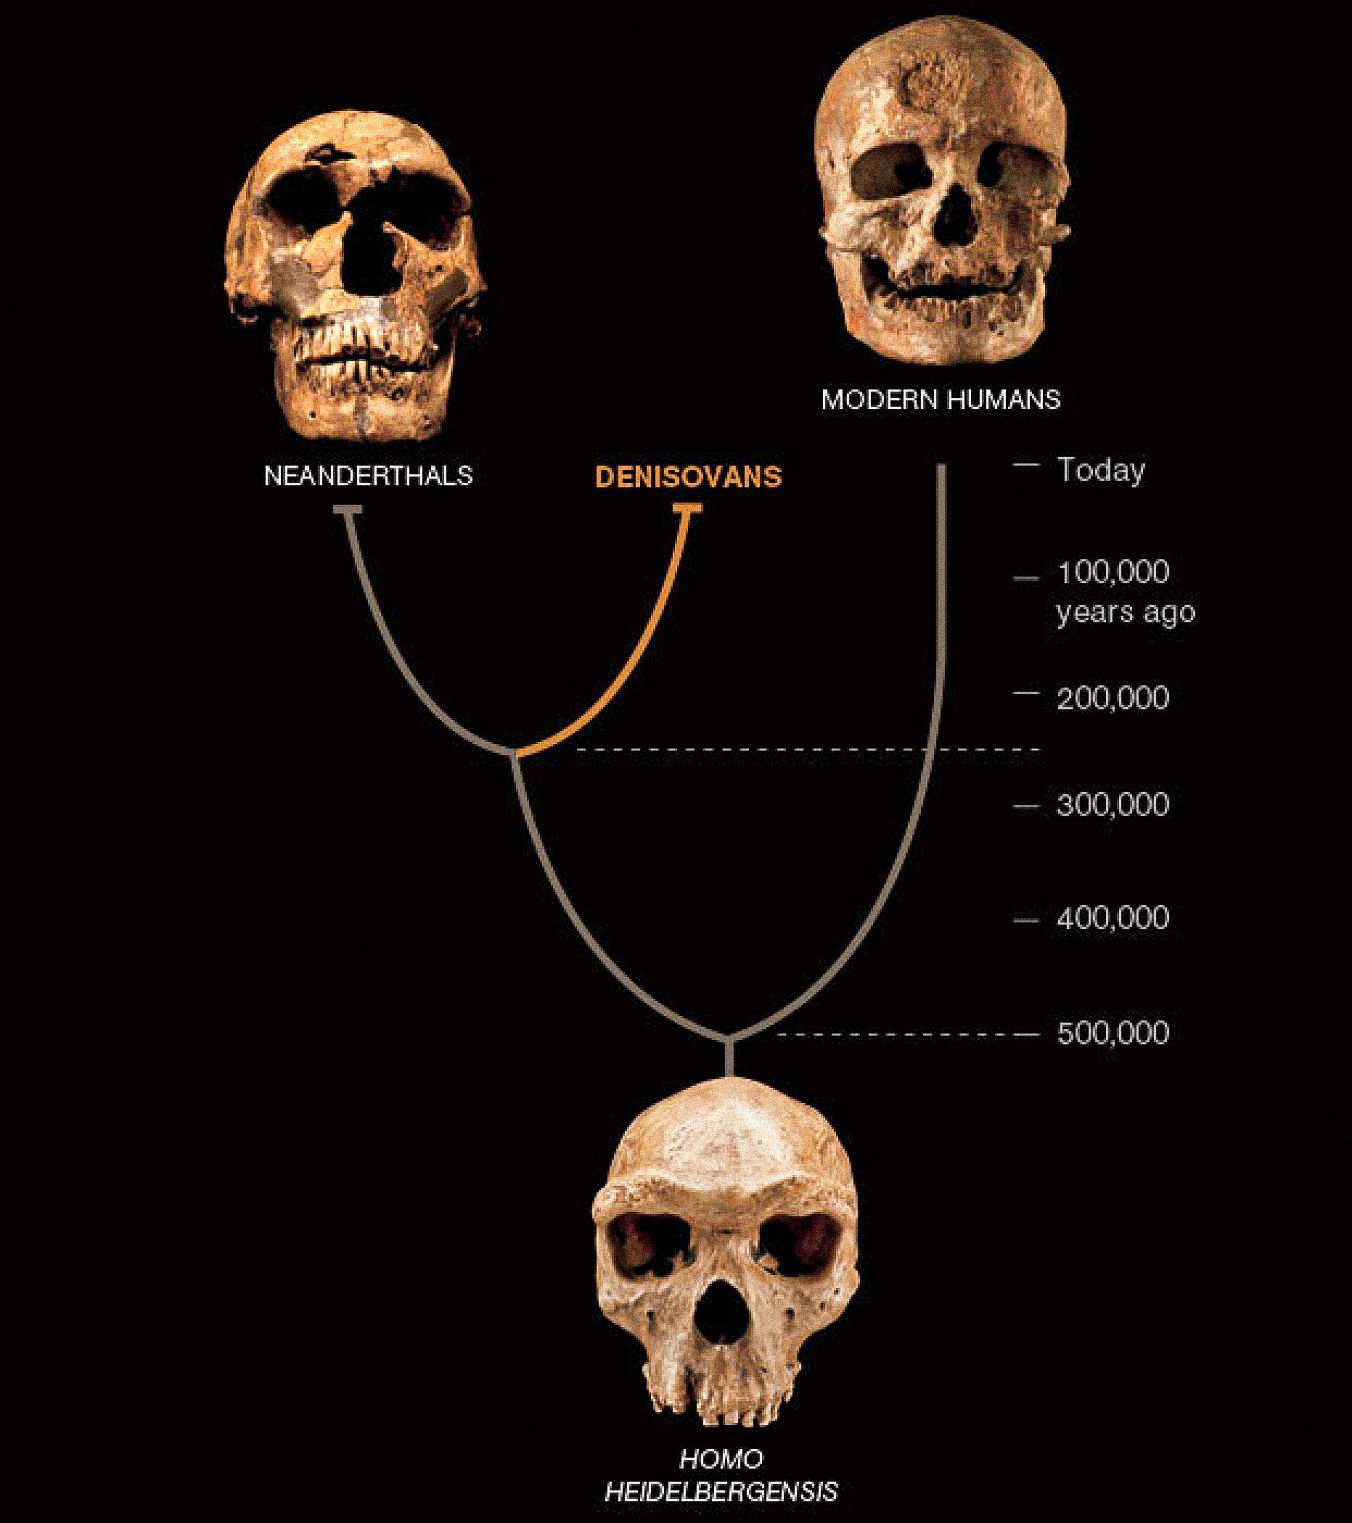 Jenis manusia ketiga, yang disebut Denisovans, tampaknya telah hidup berdampingan di Asia dengan Neanderthal dan manusia modern awal. Dua yang terakhir diketahui dari fosil dan artefak yang melimpah. Denisovan sejauh ini hanya ditentukan oleh DNA dari satu keping tulang dan dua gigi—tetapi hal itu mengungkapkan perubahan baru pada kisah manusia.